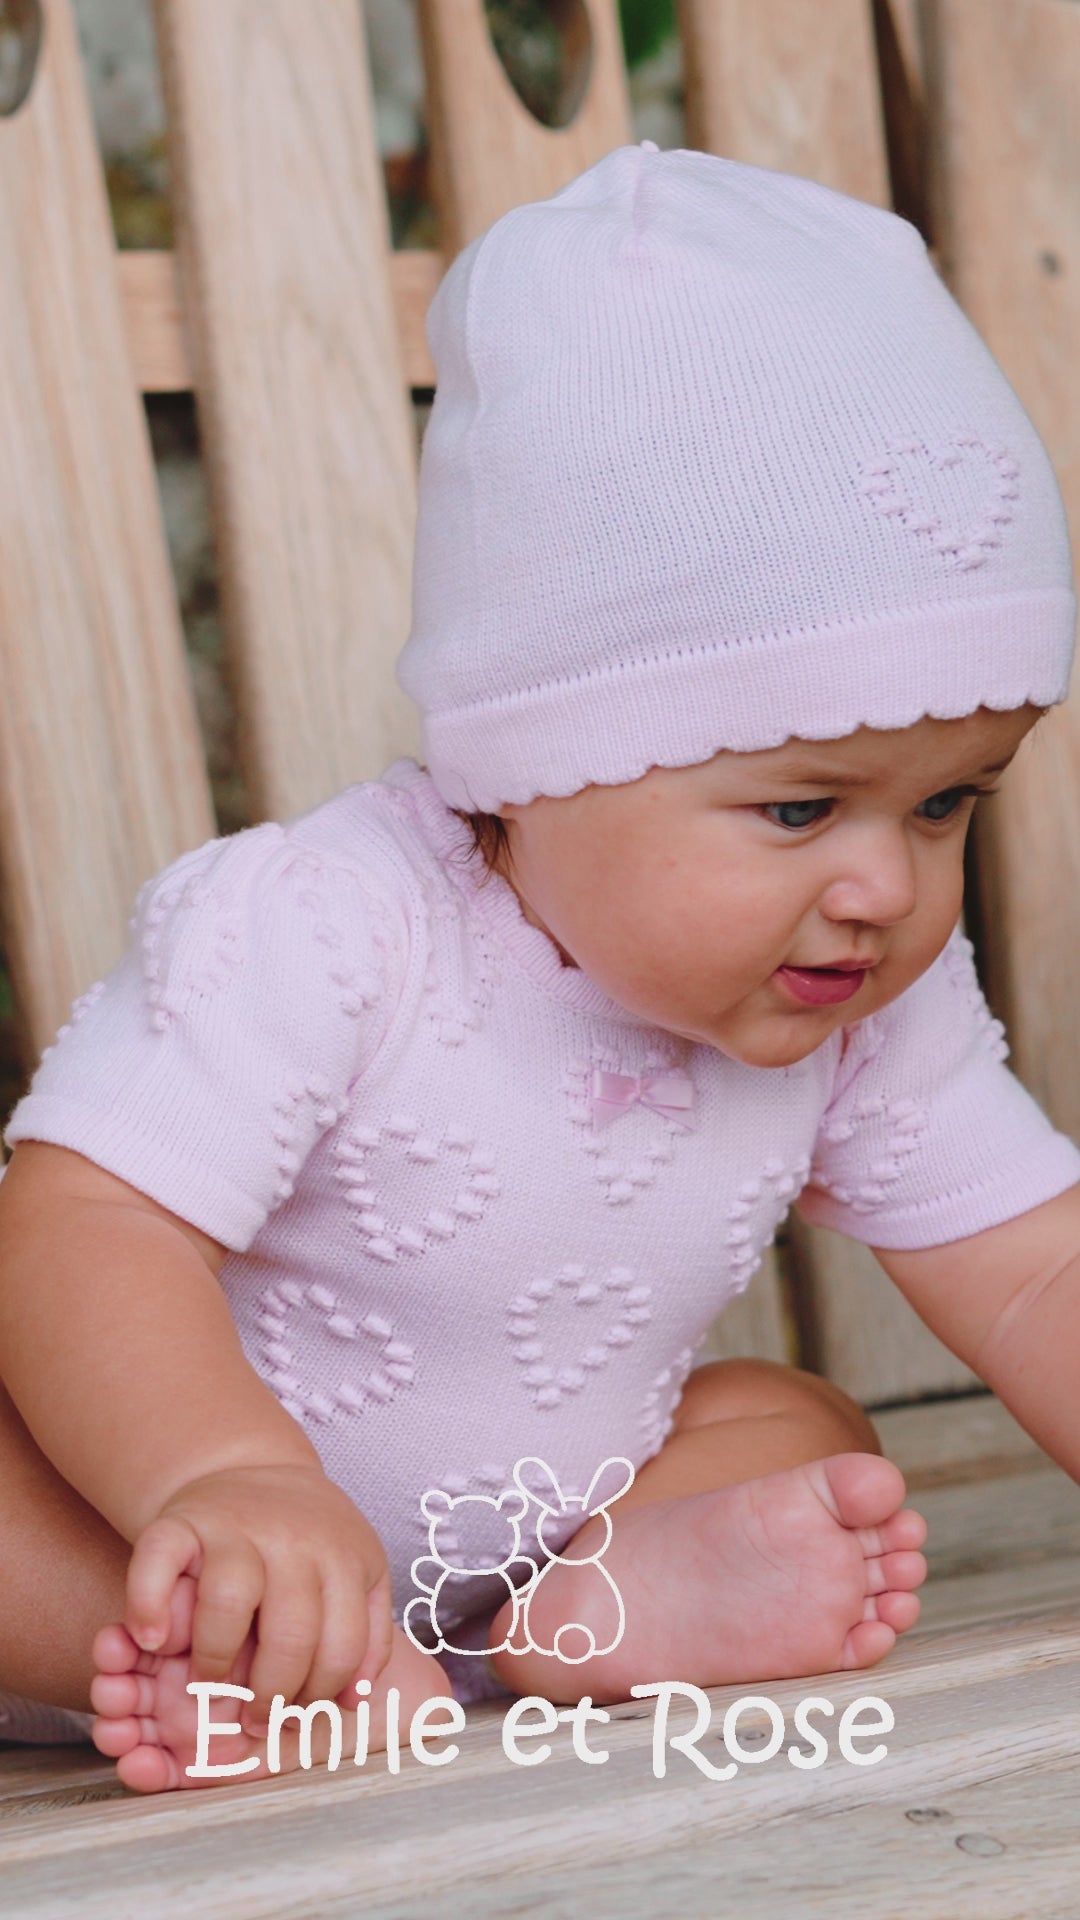 Dory Knit Baby-Mädchen-Strampler und Mütze